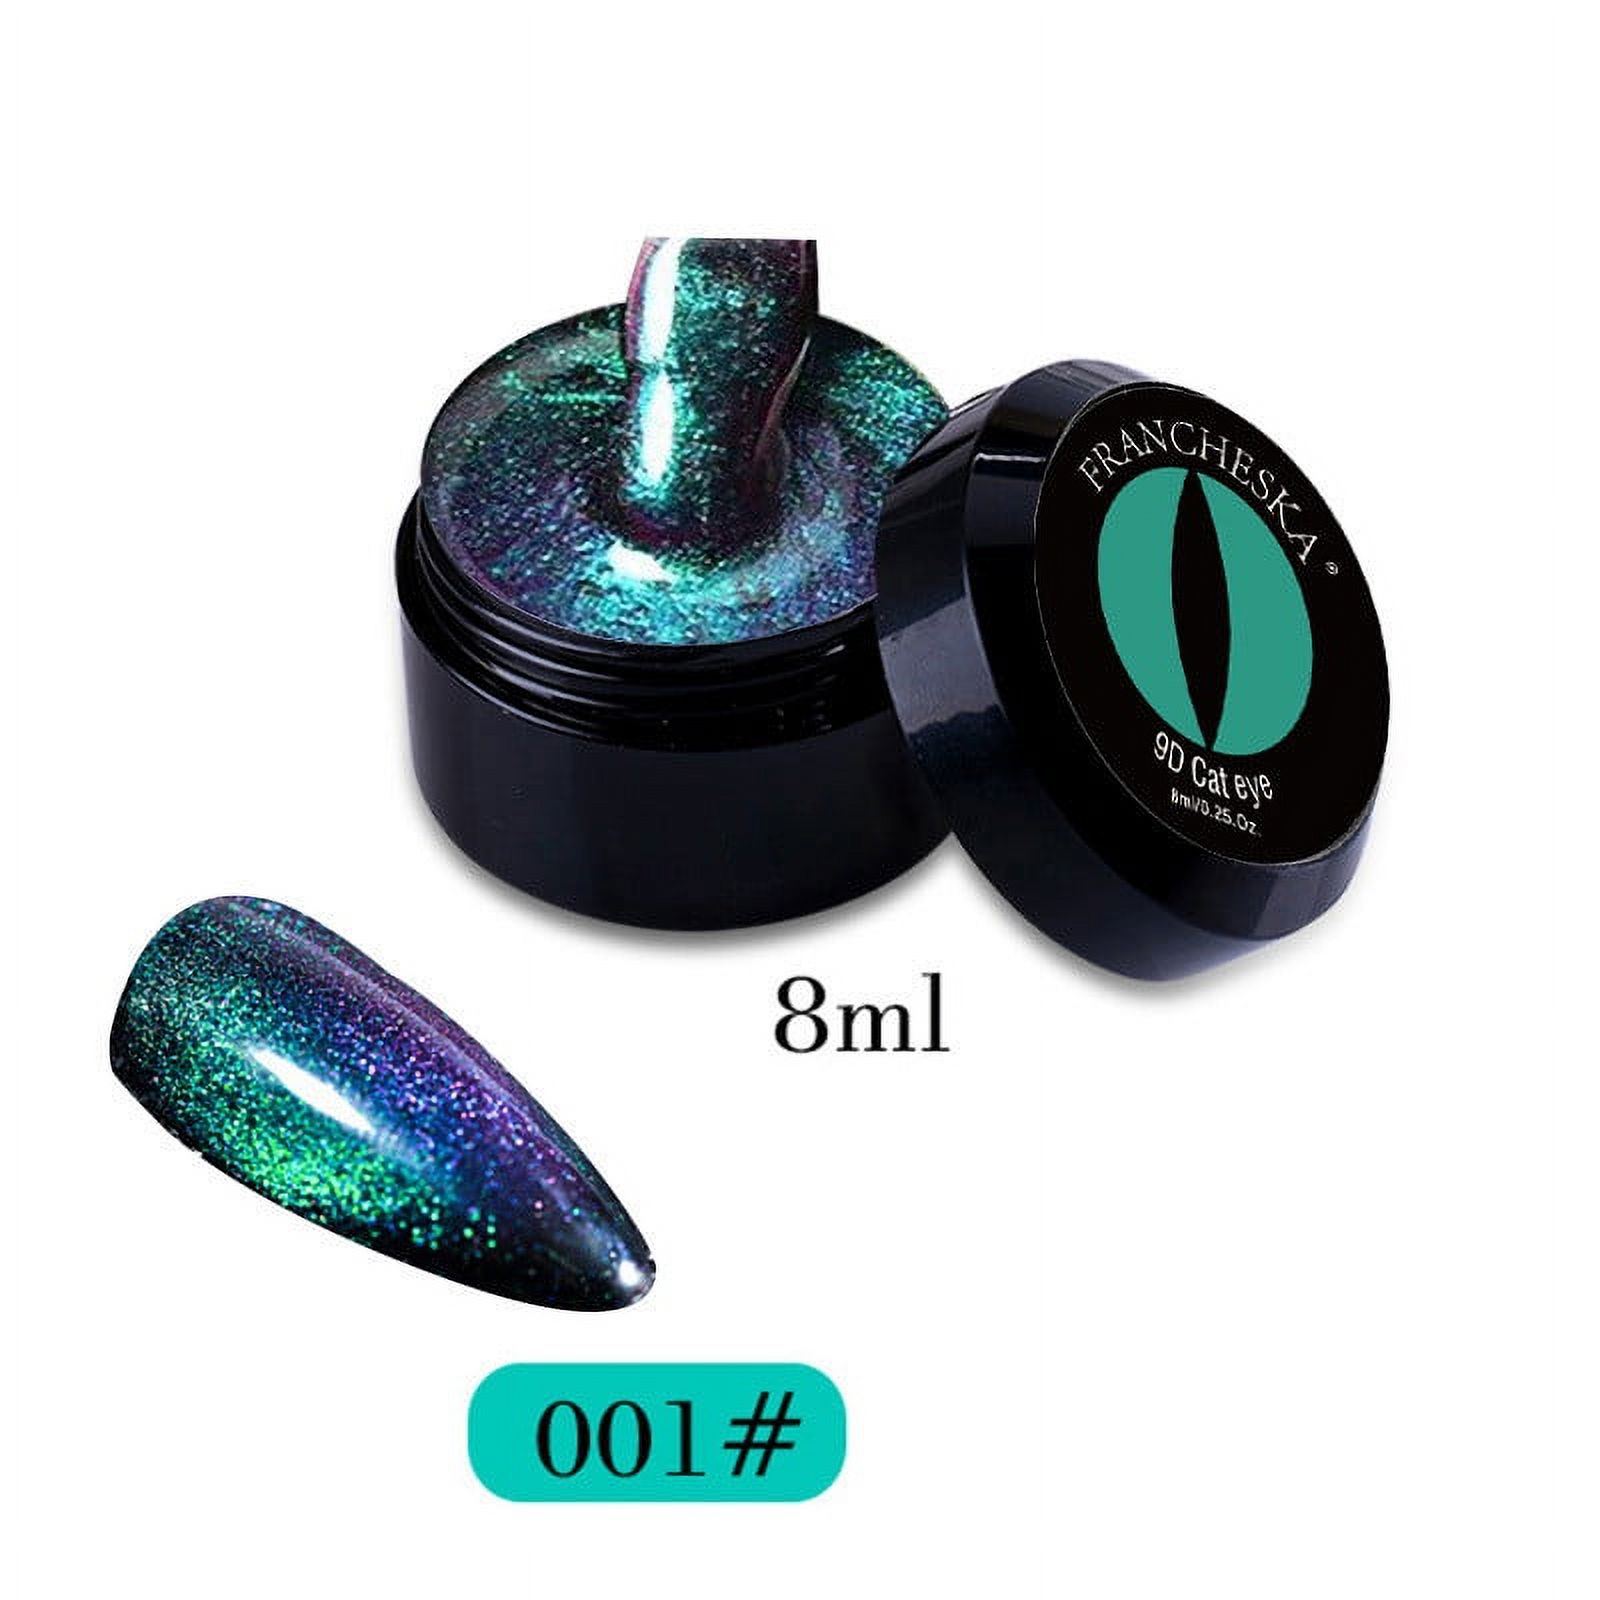 Kehuo 9D Nail Gel Polish Magnet Shiny Nail Gel - LED Nail Art Gel ...